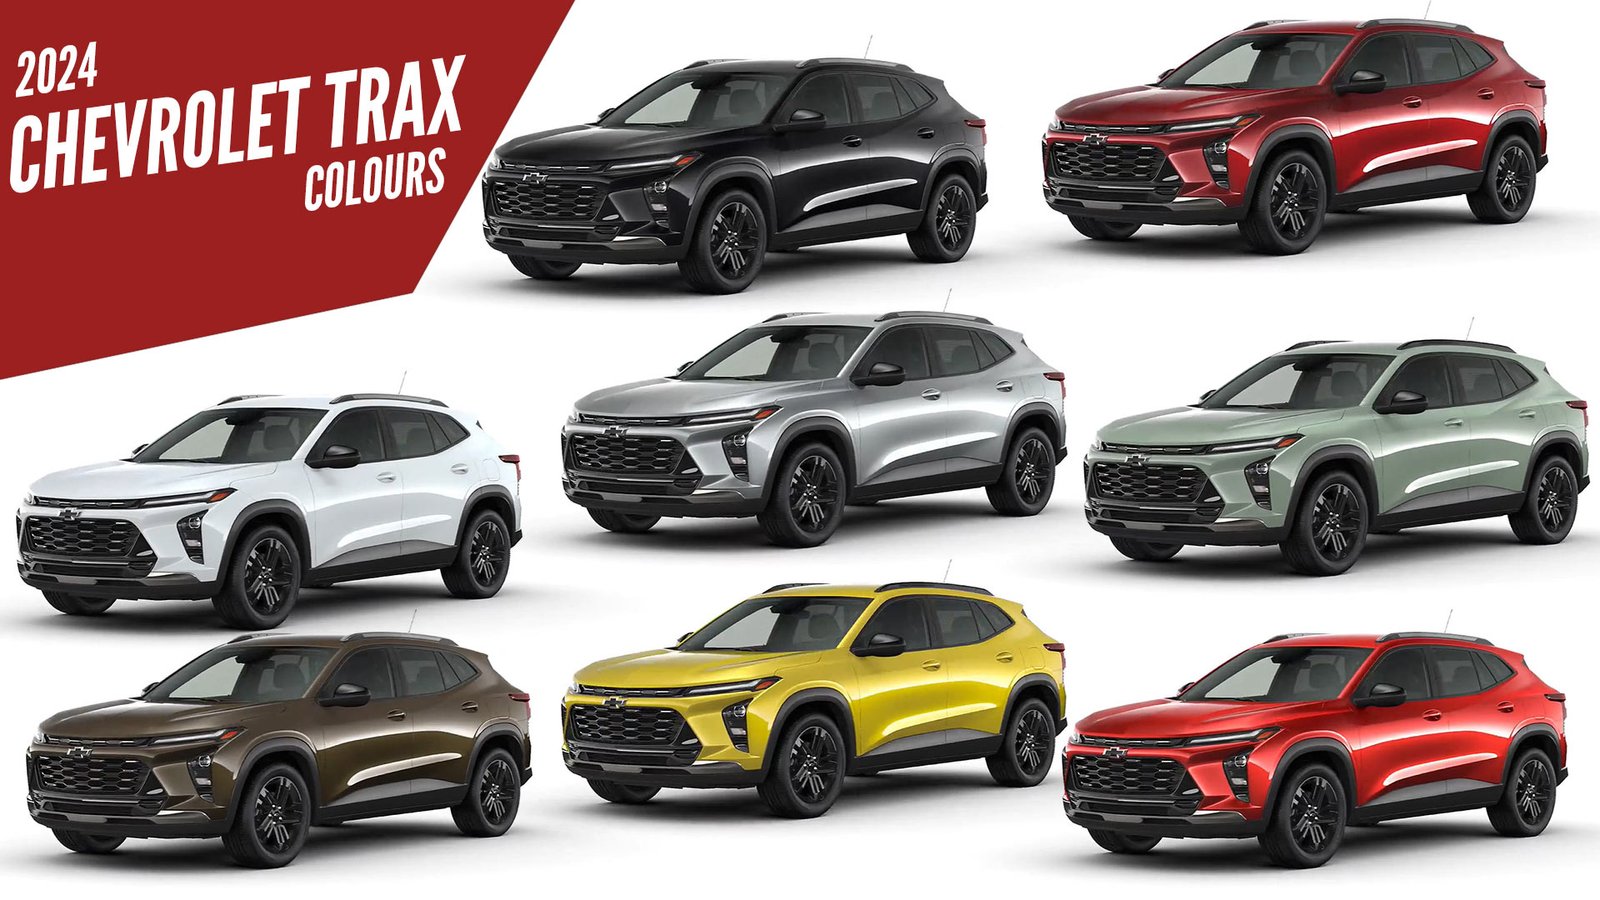 2024 Chevrolet Trax All Colors | AUTOBICS